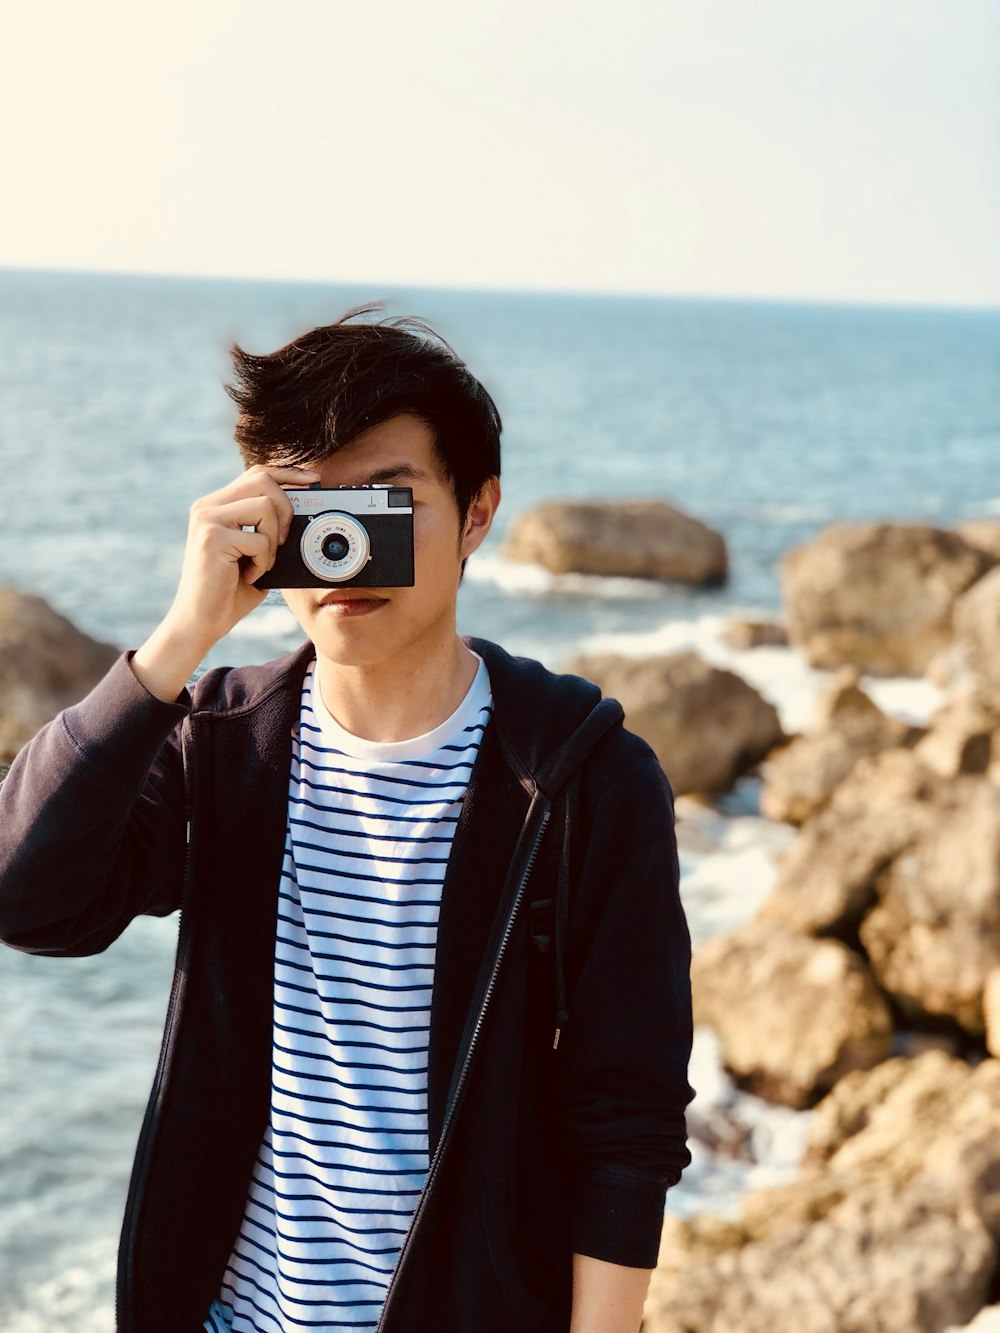 personne prenant une photo à l’aide d’un appareil photo compact gris près de la mer